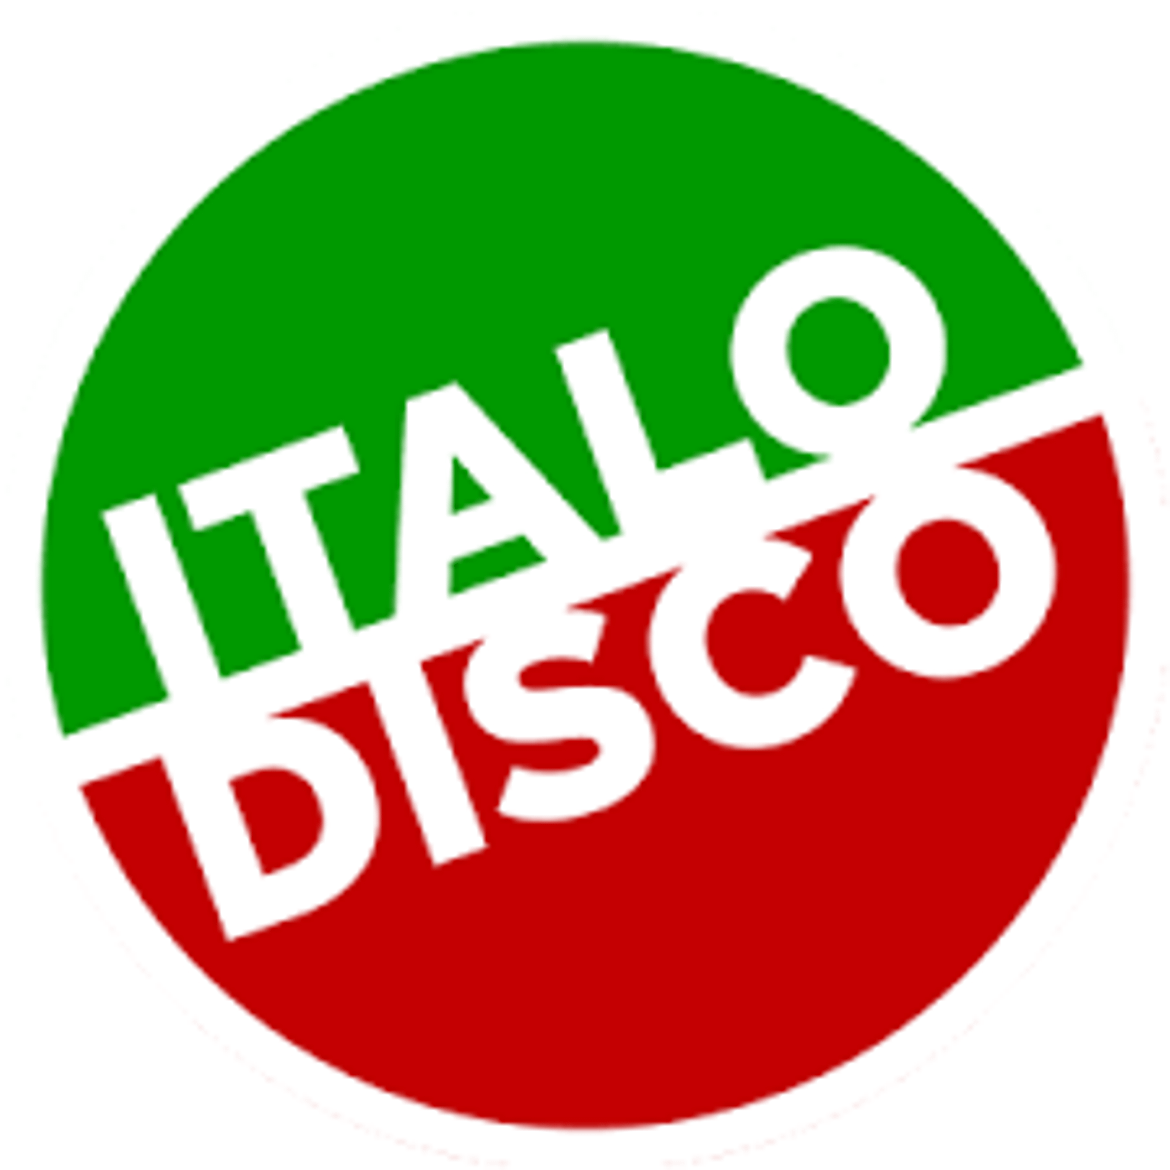 Italo disco new mp3. Итало диско. Надпись Italo Disco. Логотип итало диско. Итало диско радиостанции.